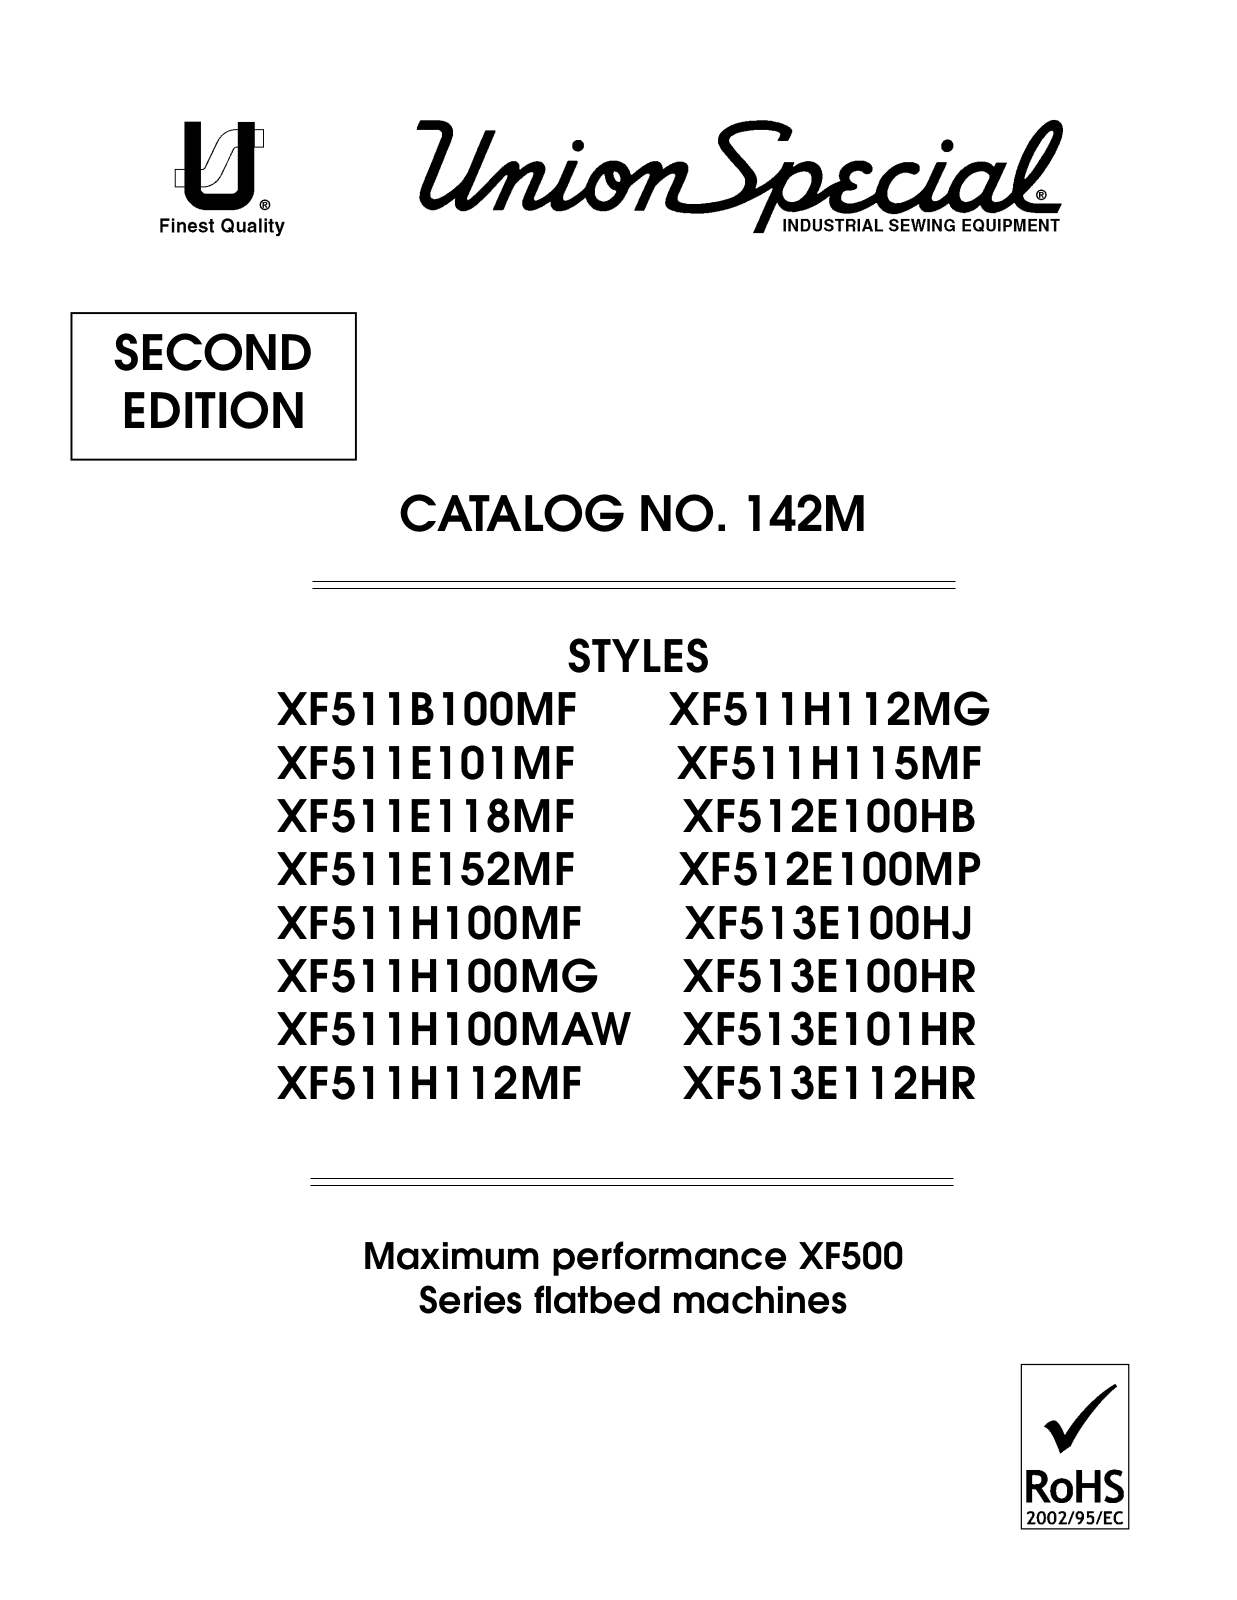 Union Special XF511B100MF, XF511E101MF, XF511E118MF, XF511E152MF, XF511H100MAW Parts List